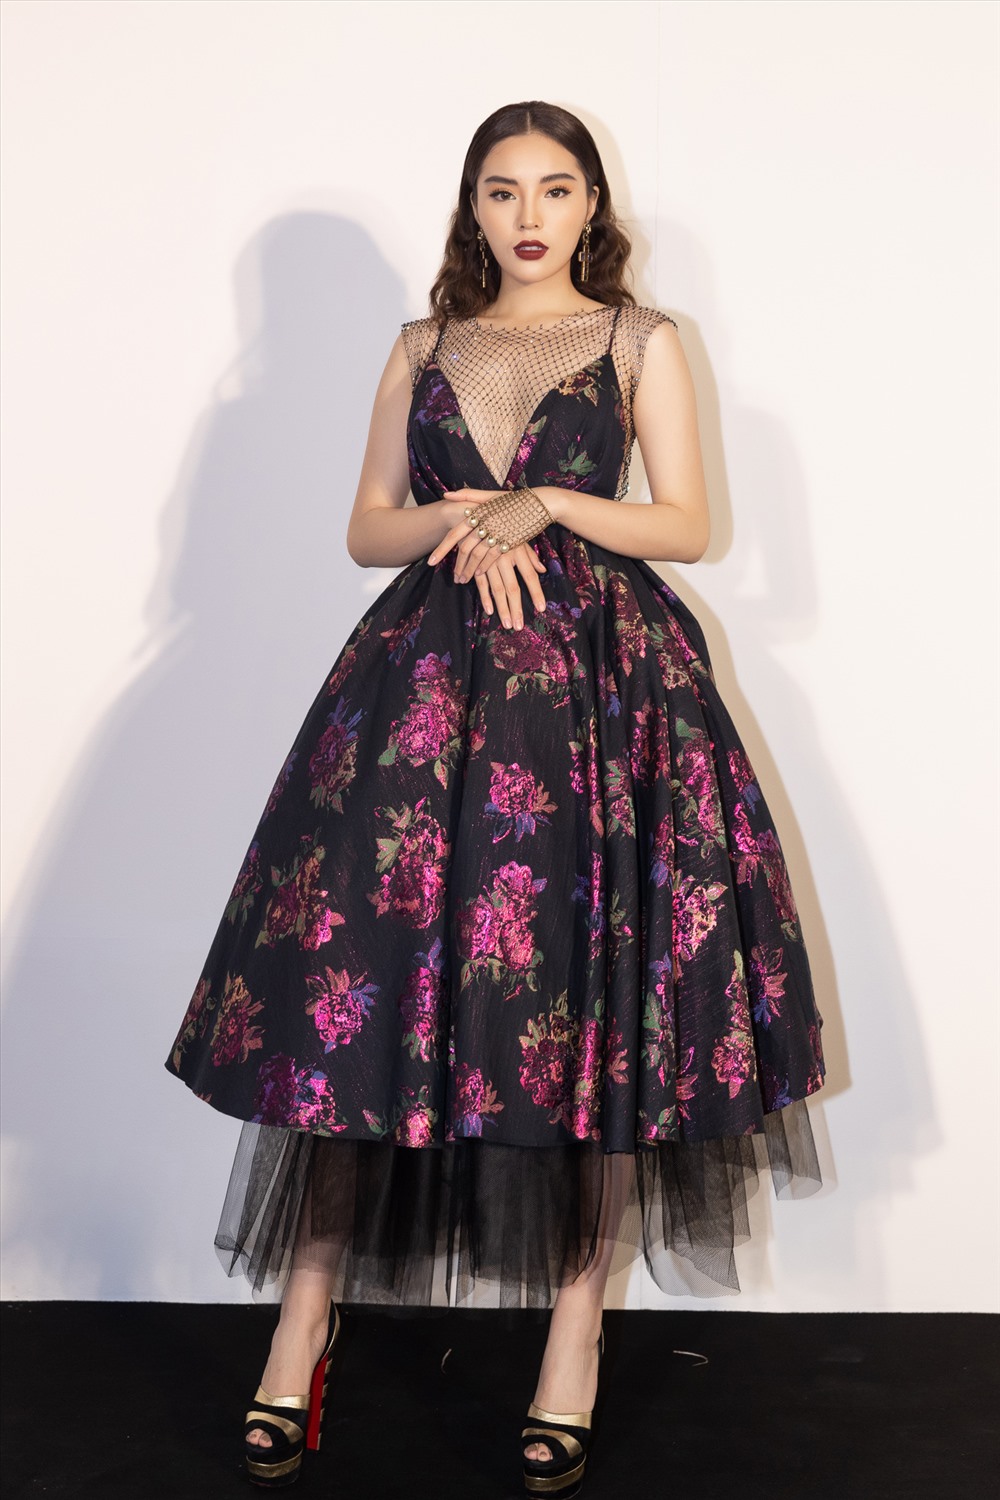 Hoa hậu Việt Nam 2014 Kỳ Duyên chọn thiết kế dáng xoè, xẻ ngực sâu gợi cảm. Trên nền đen, hoạ tiết hoa với sắc hồng được tôn lên tuyệt đối. 